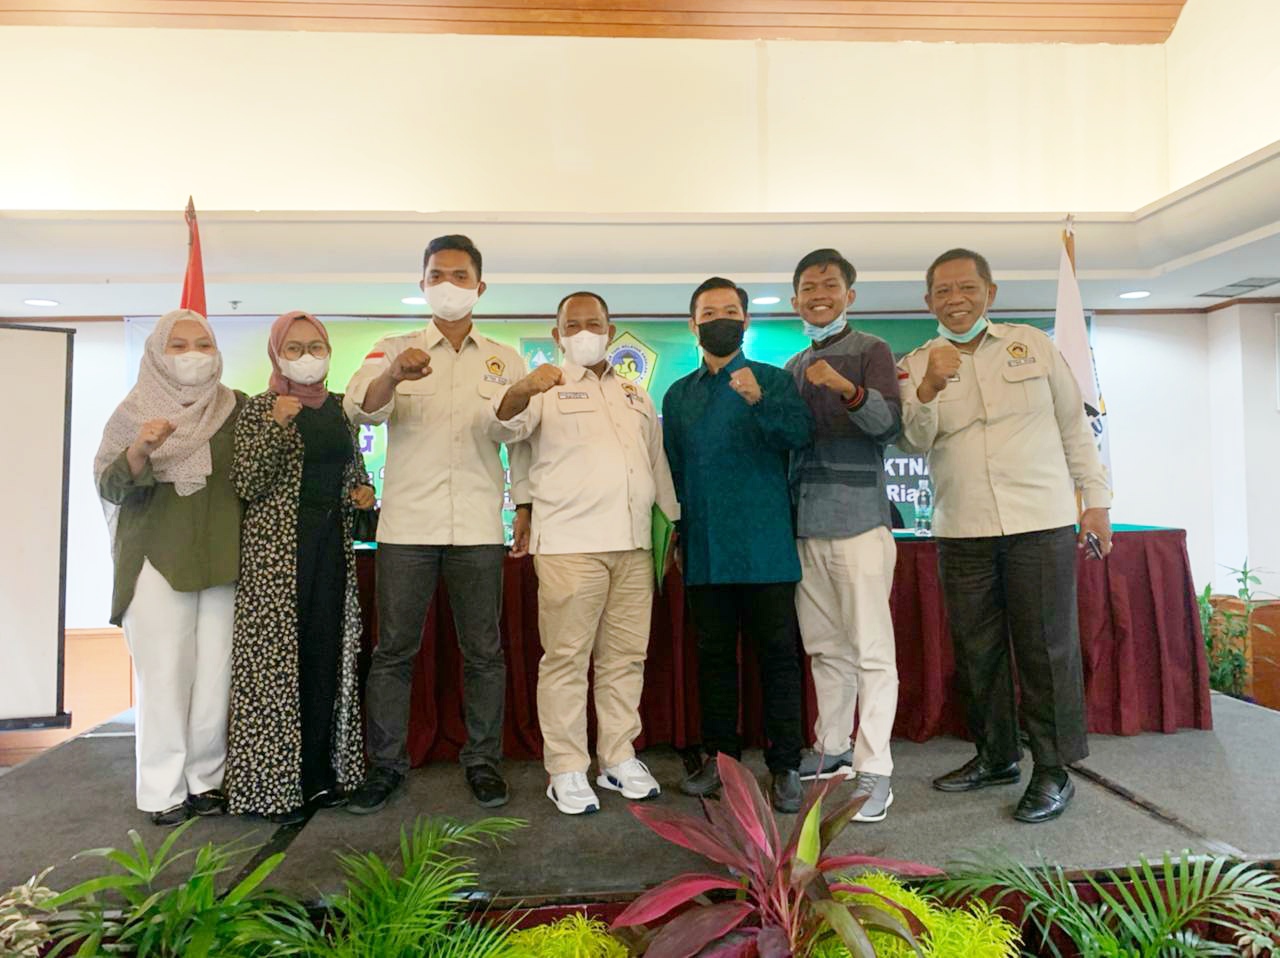 Koordinator Pemuda KTNA Riau Supriyanto Beserta Tim Serahkan Hasil Rumusan Program Kerja